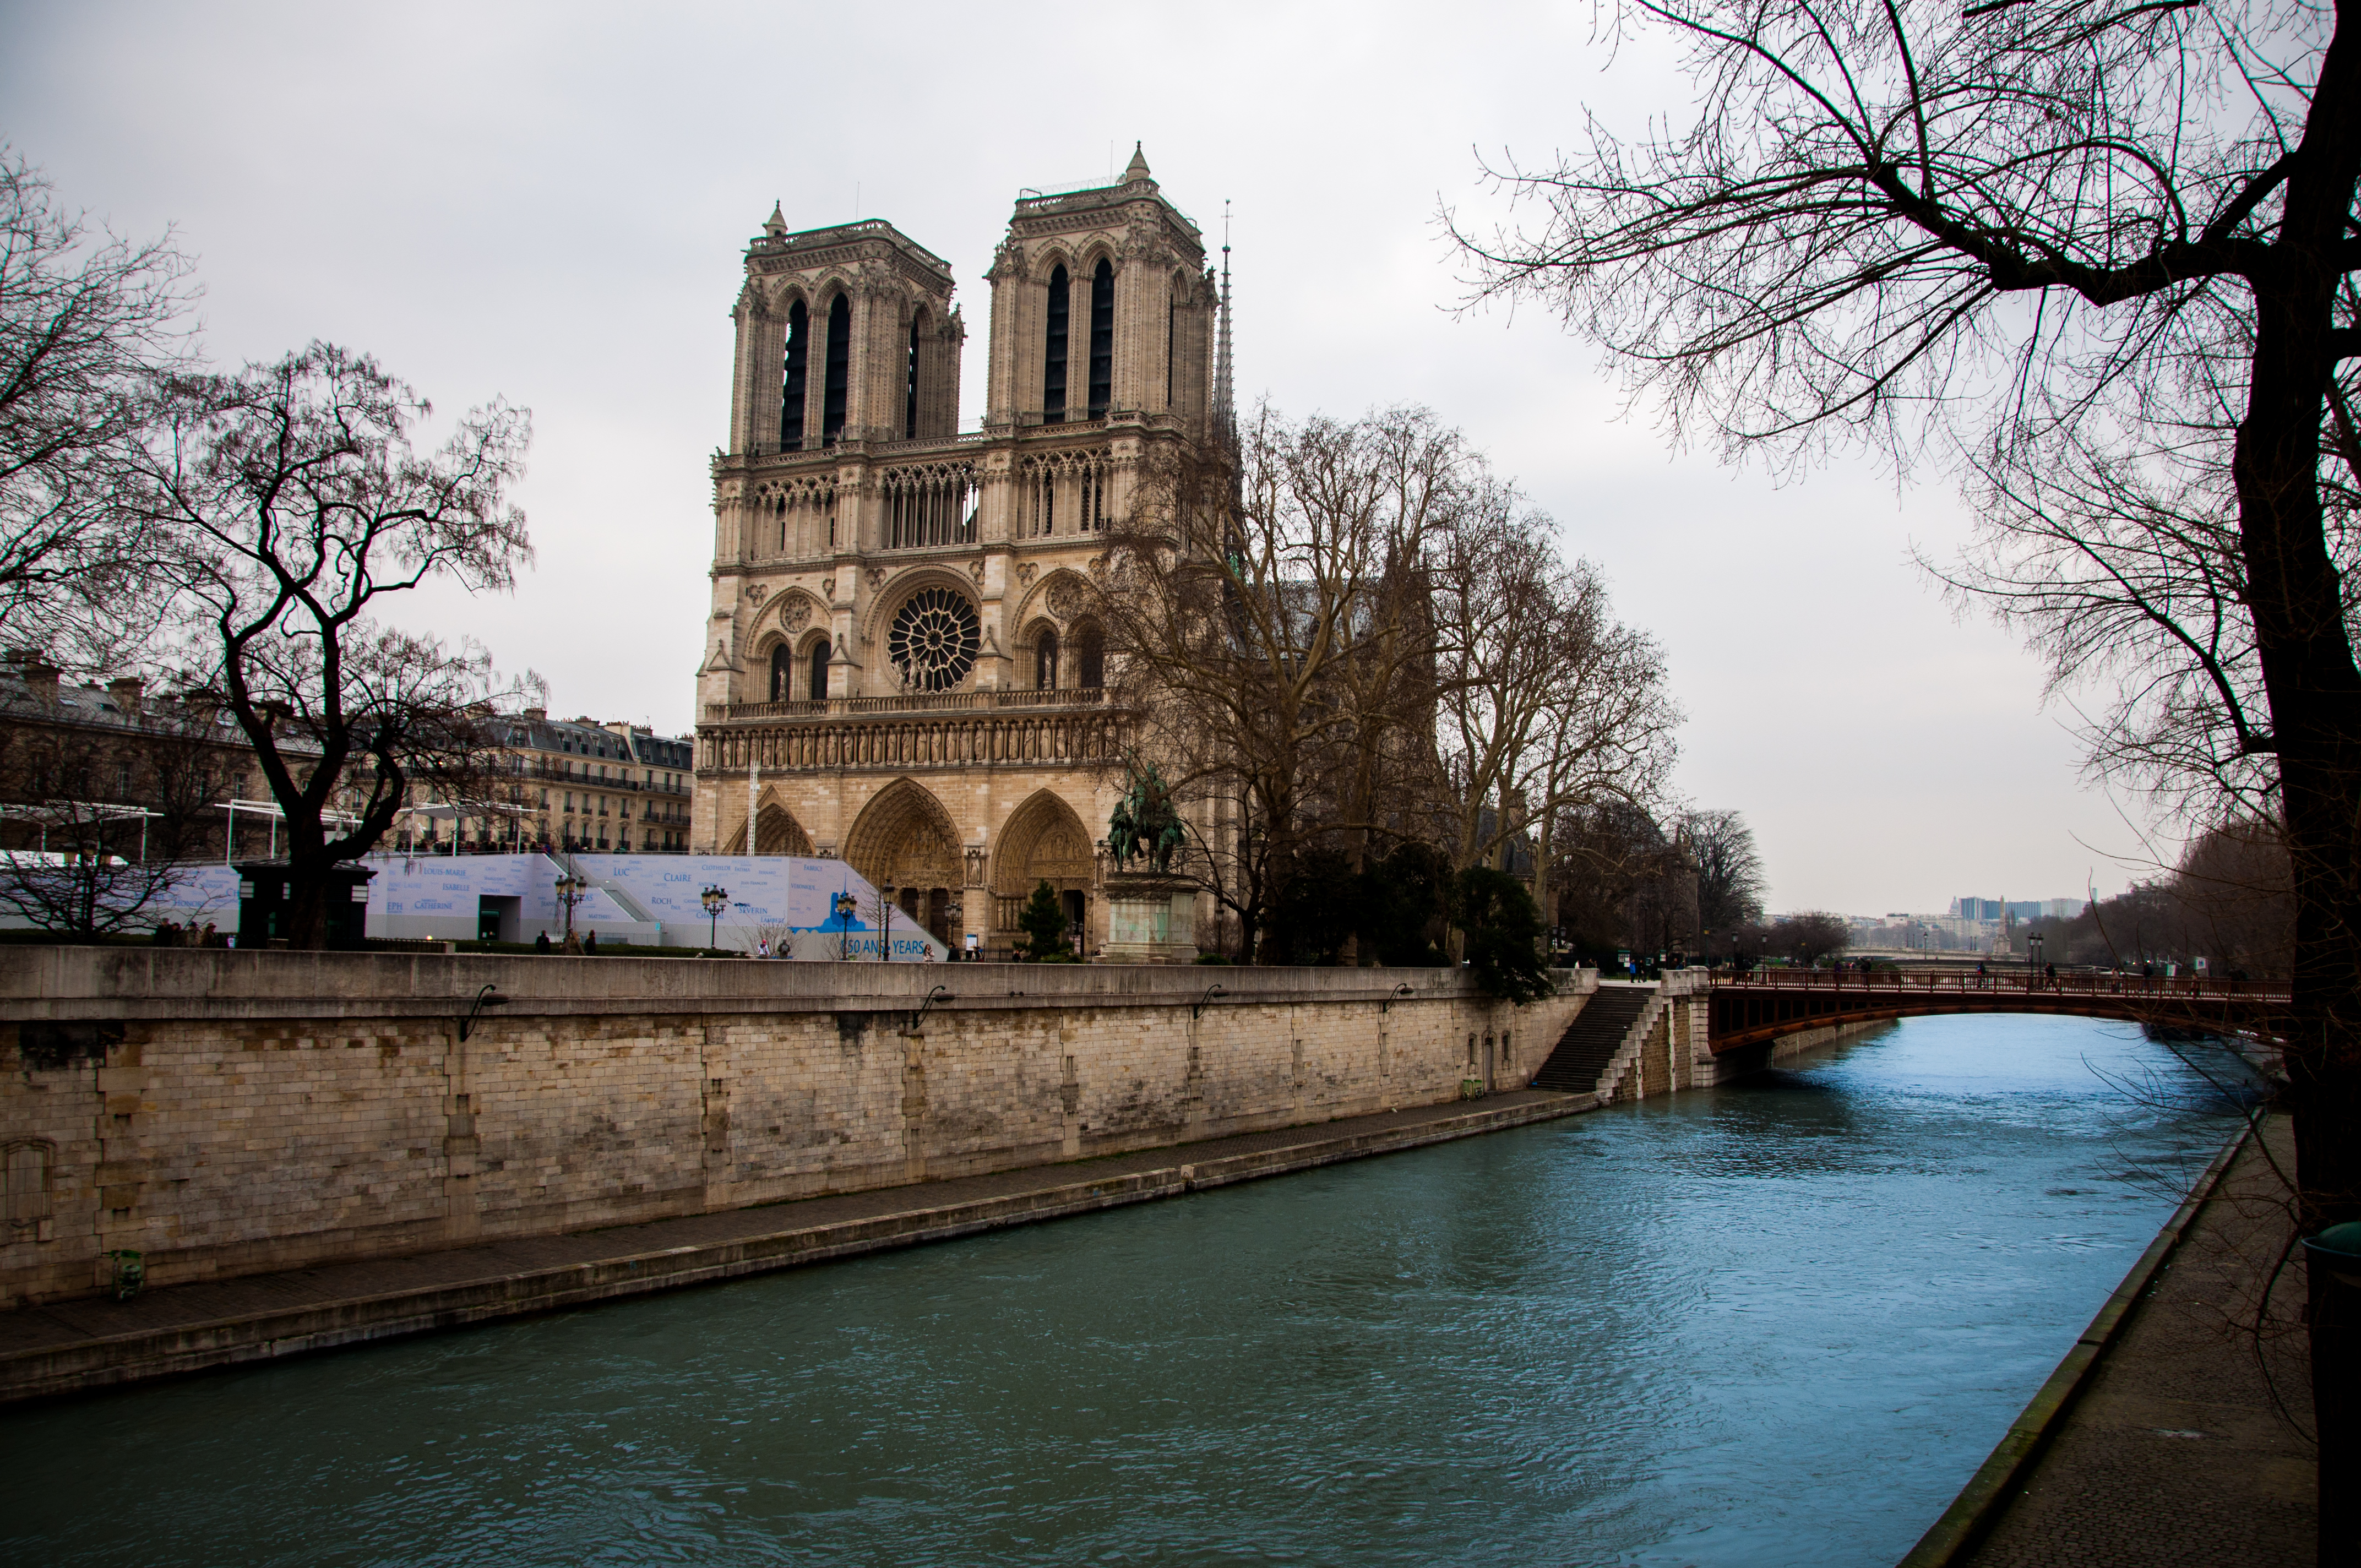  Notre Dame De Paris  Wallpapers Pictures Images